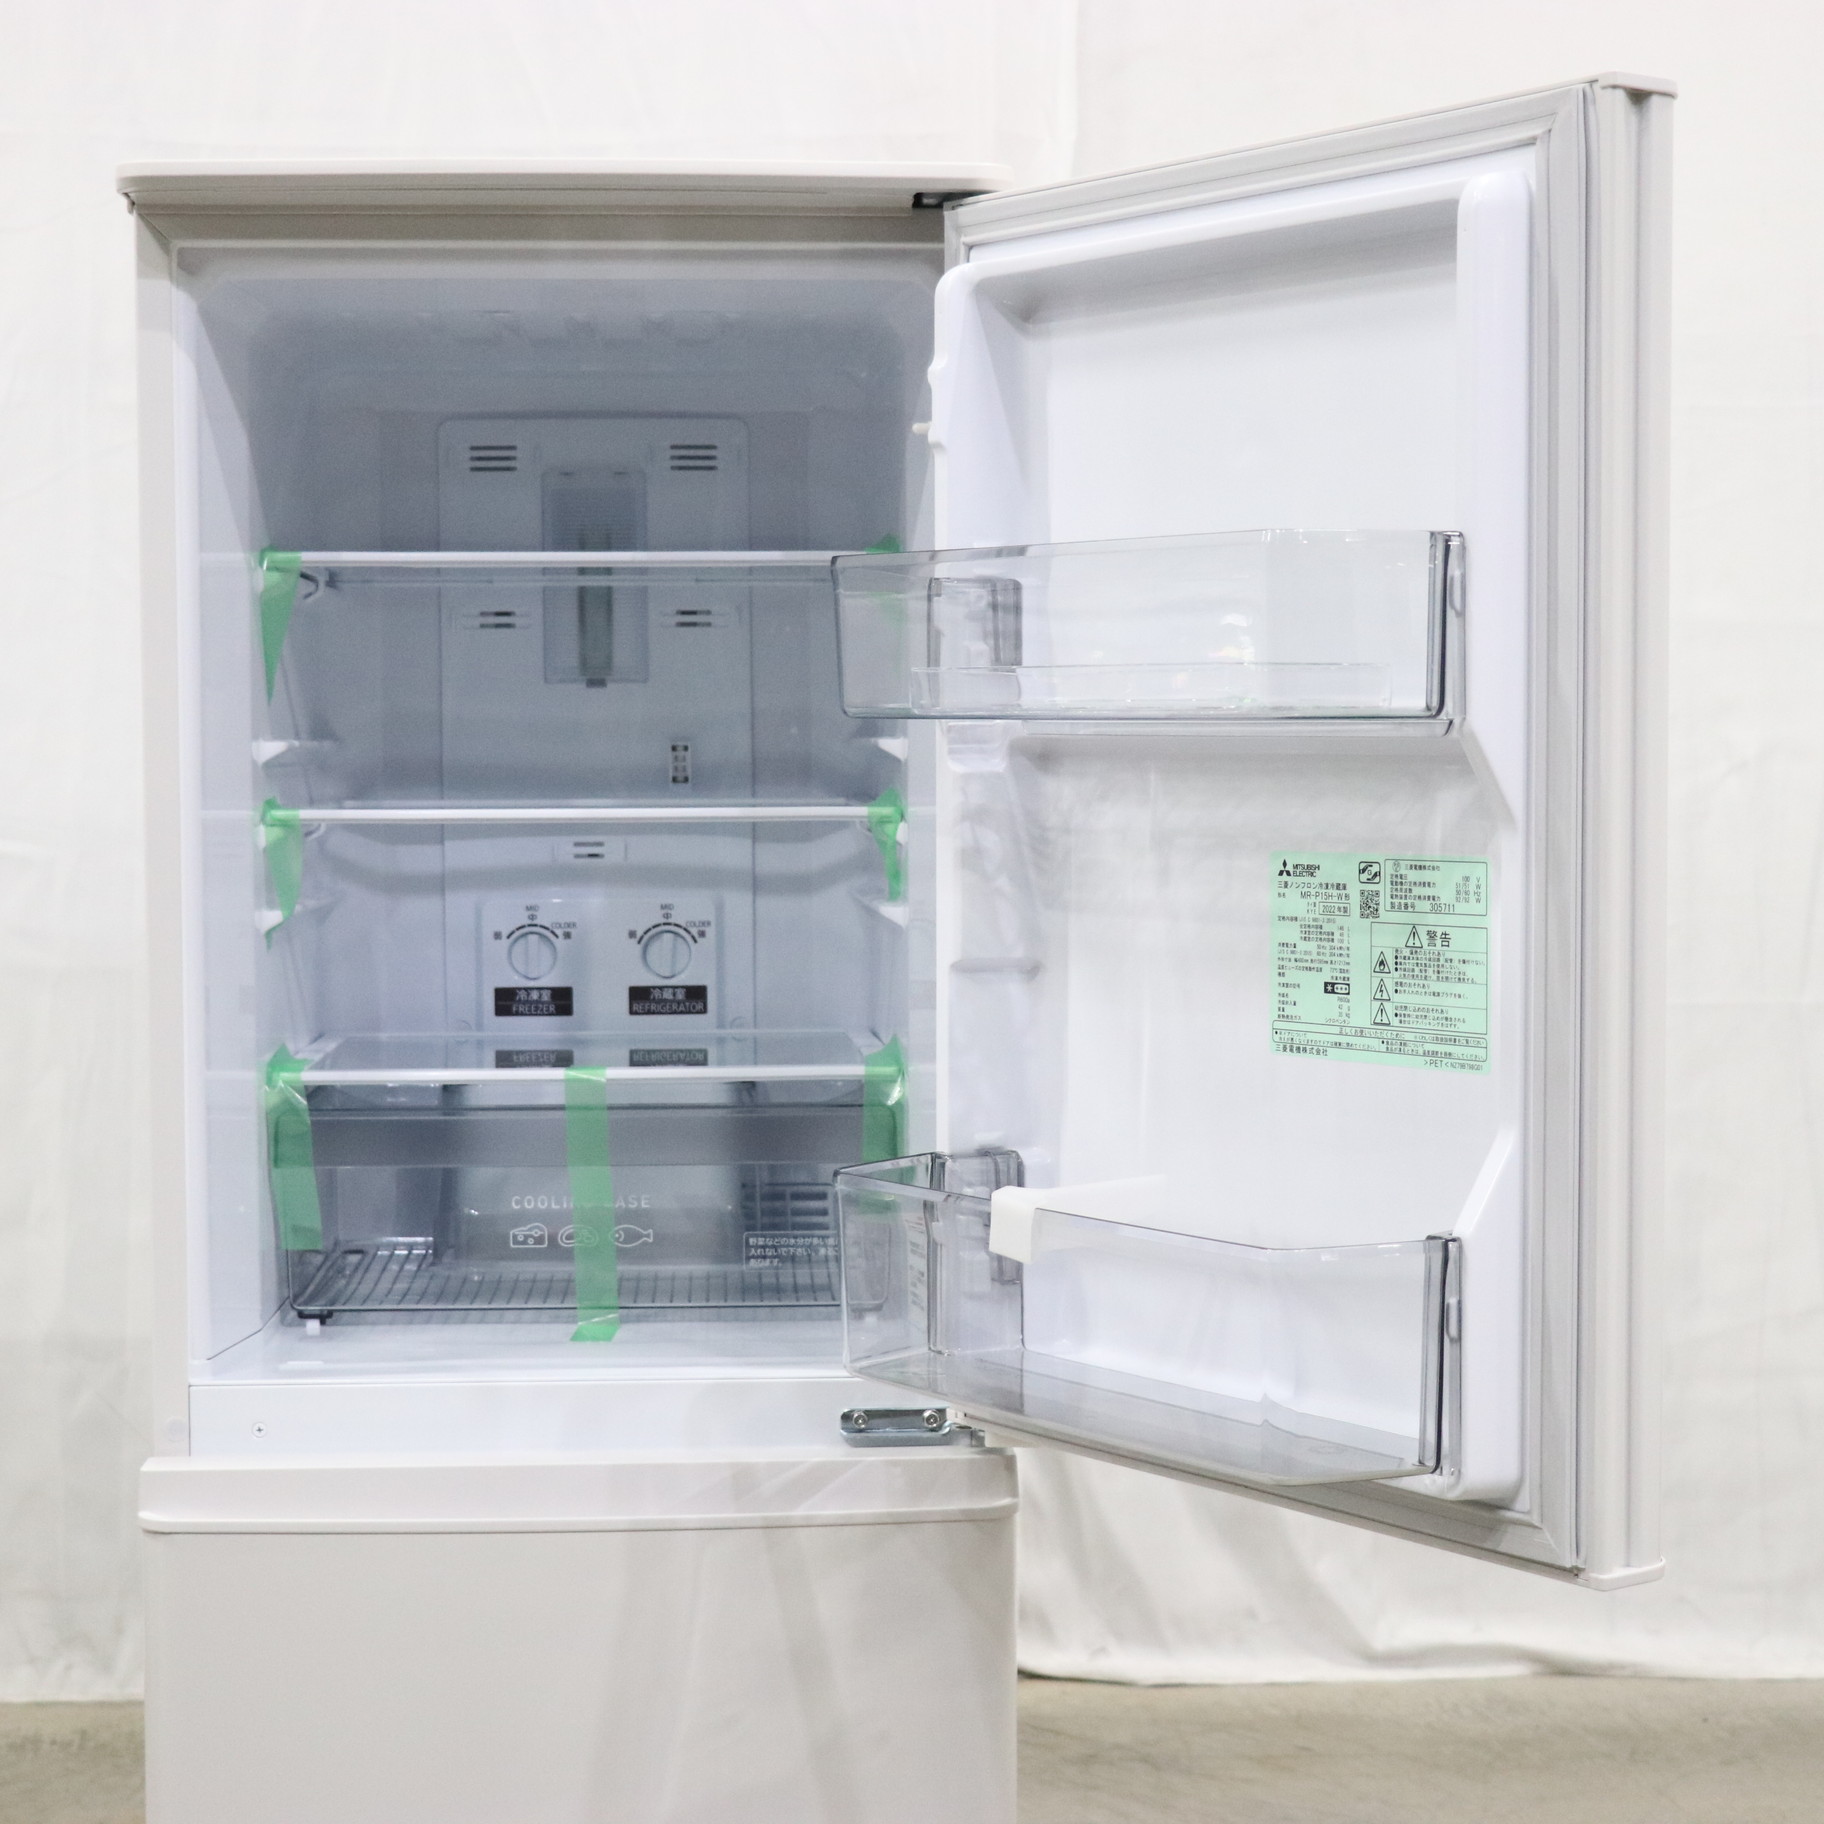 三菱ノンフロン冷凍冷蔵庫 MR-P15H-W - 冷蔵庫・冷凍庫